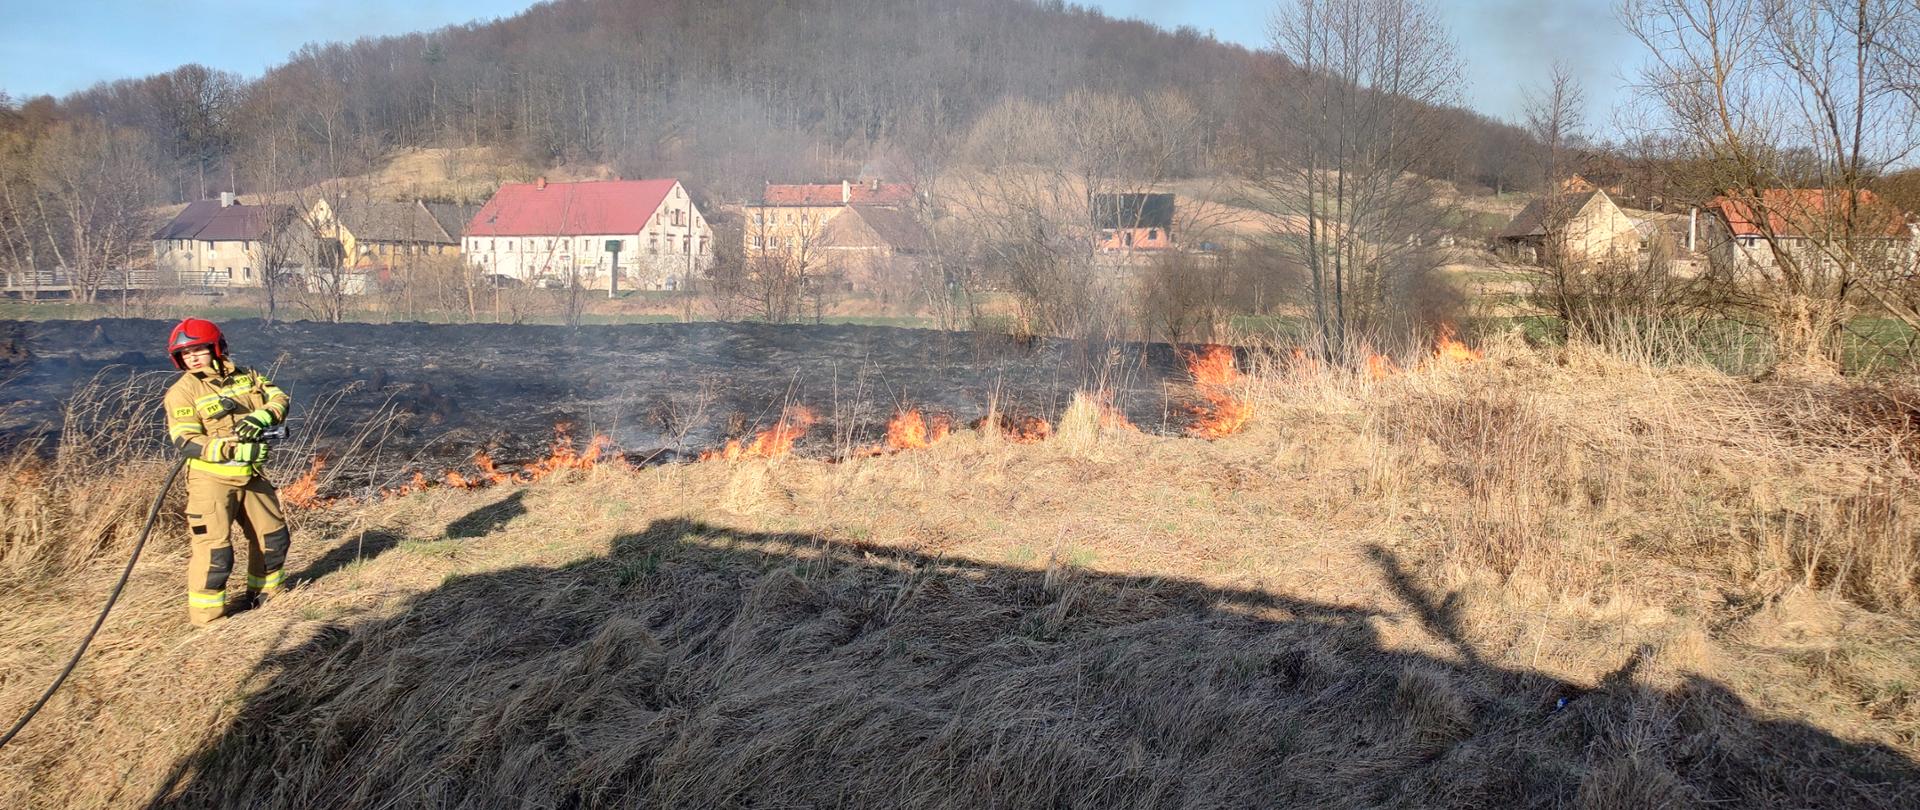 strażak na tle palącej się łąki, w oddali widać szereg zabudowań